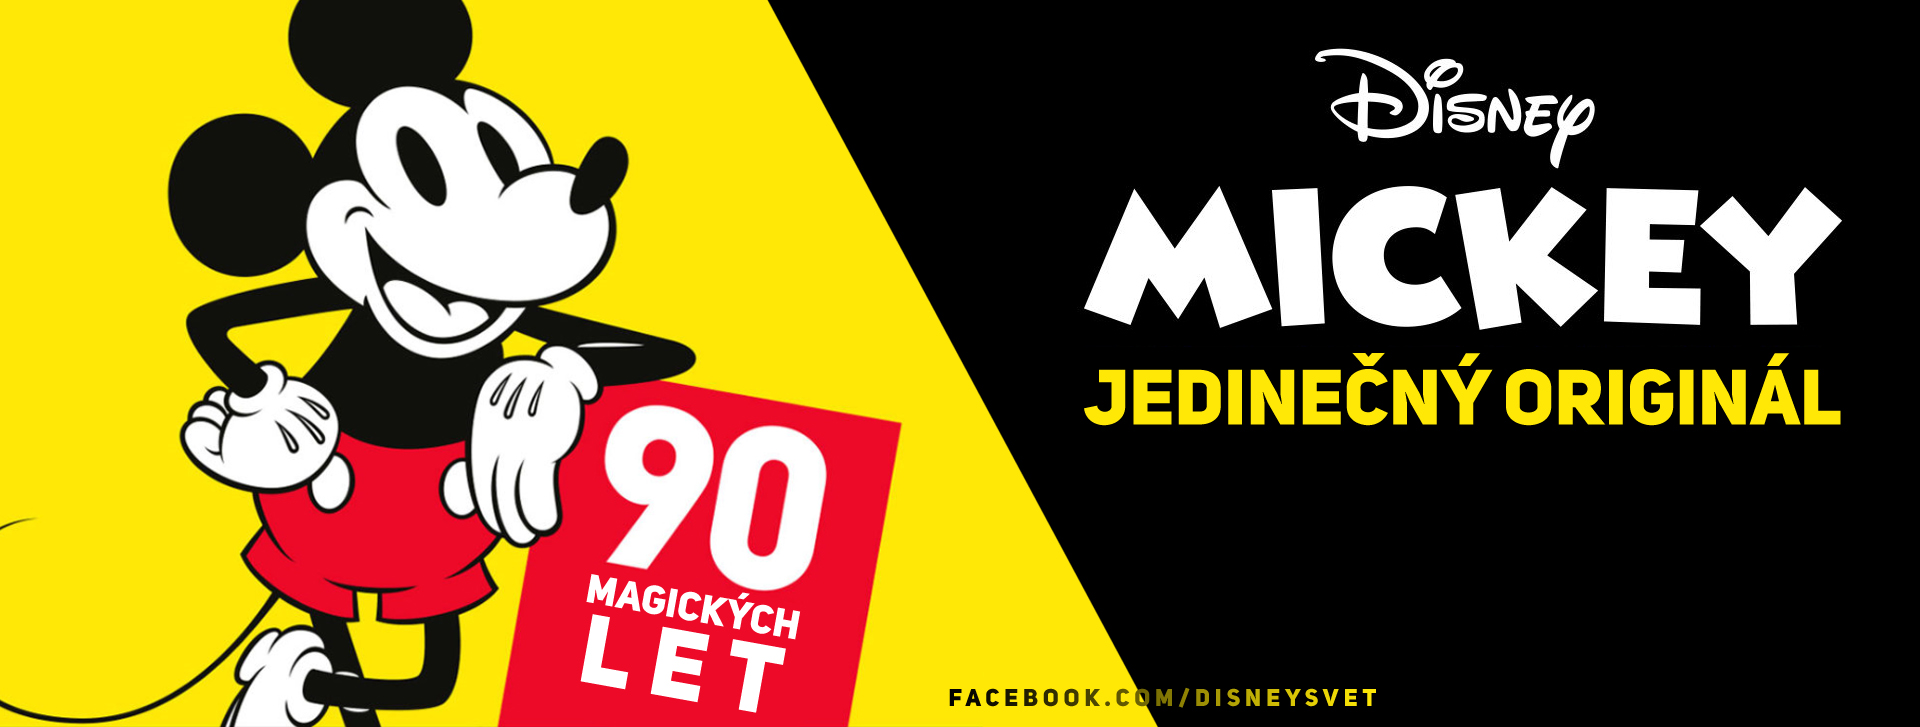 Mickey 90 